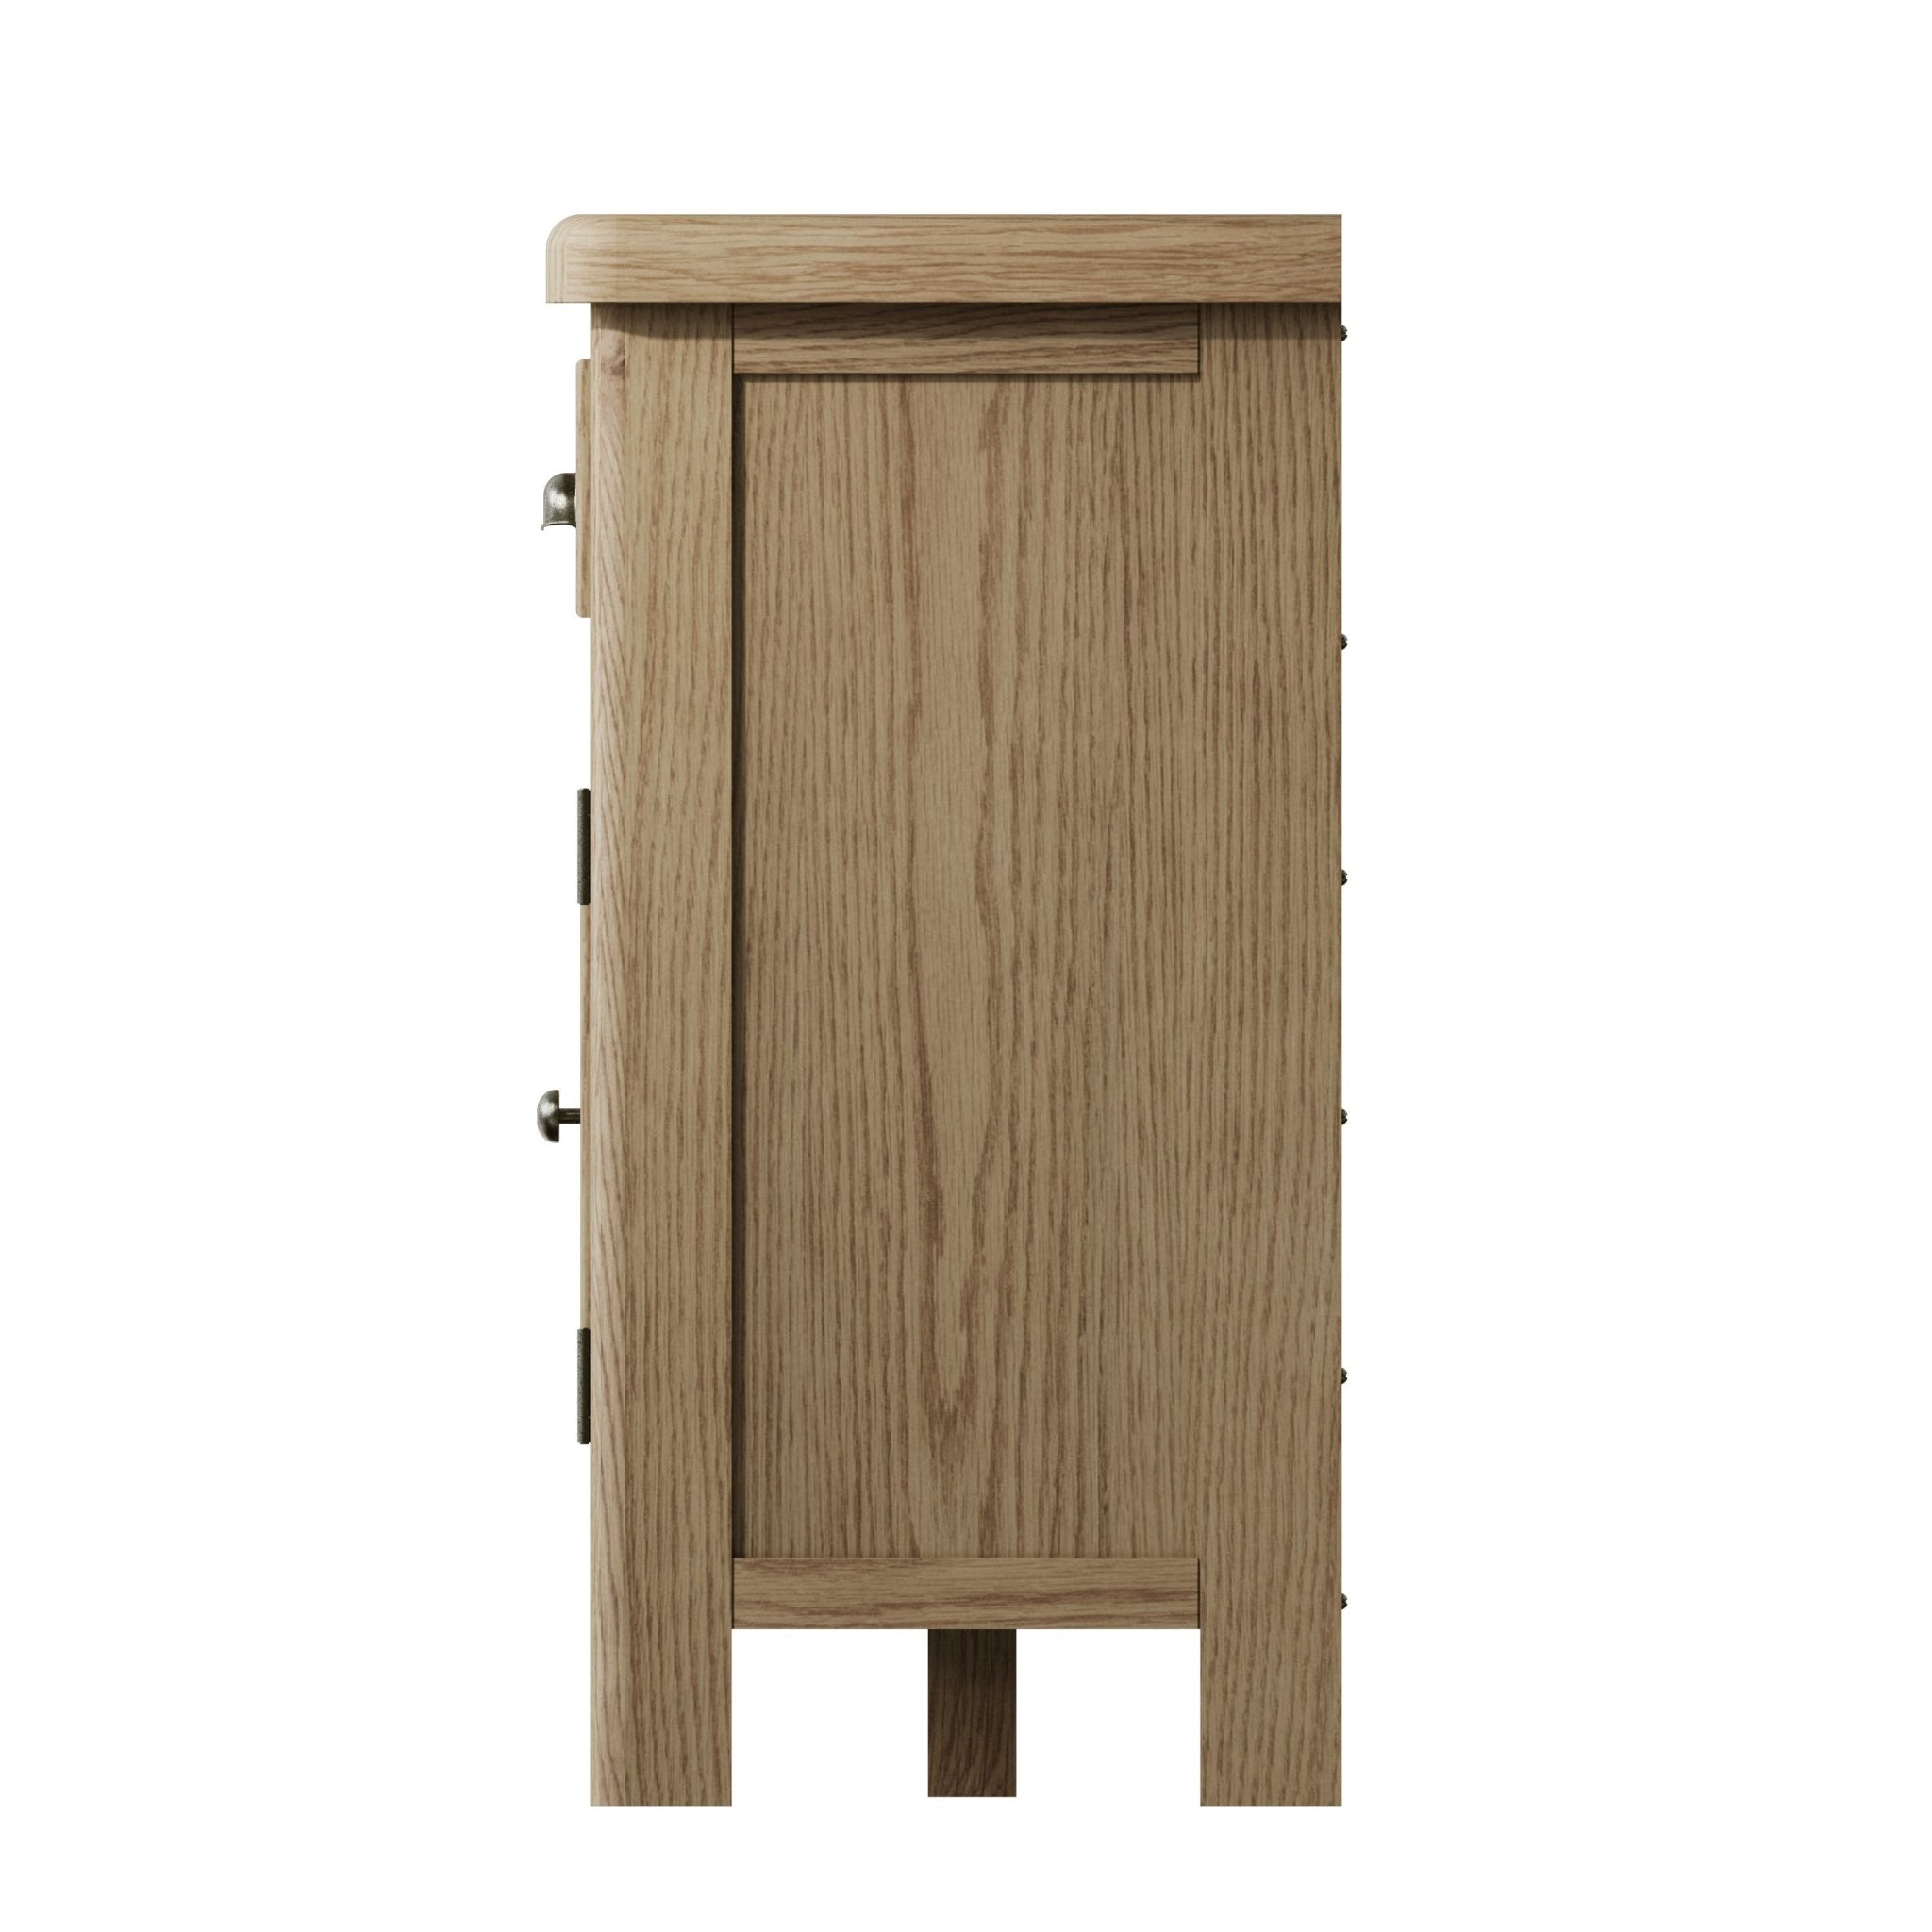 Rusper Oak 2 Door 3 Drawer Large Sideboard with Wine Storage - Duck Barn Interiors